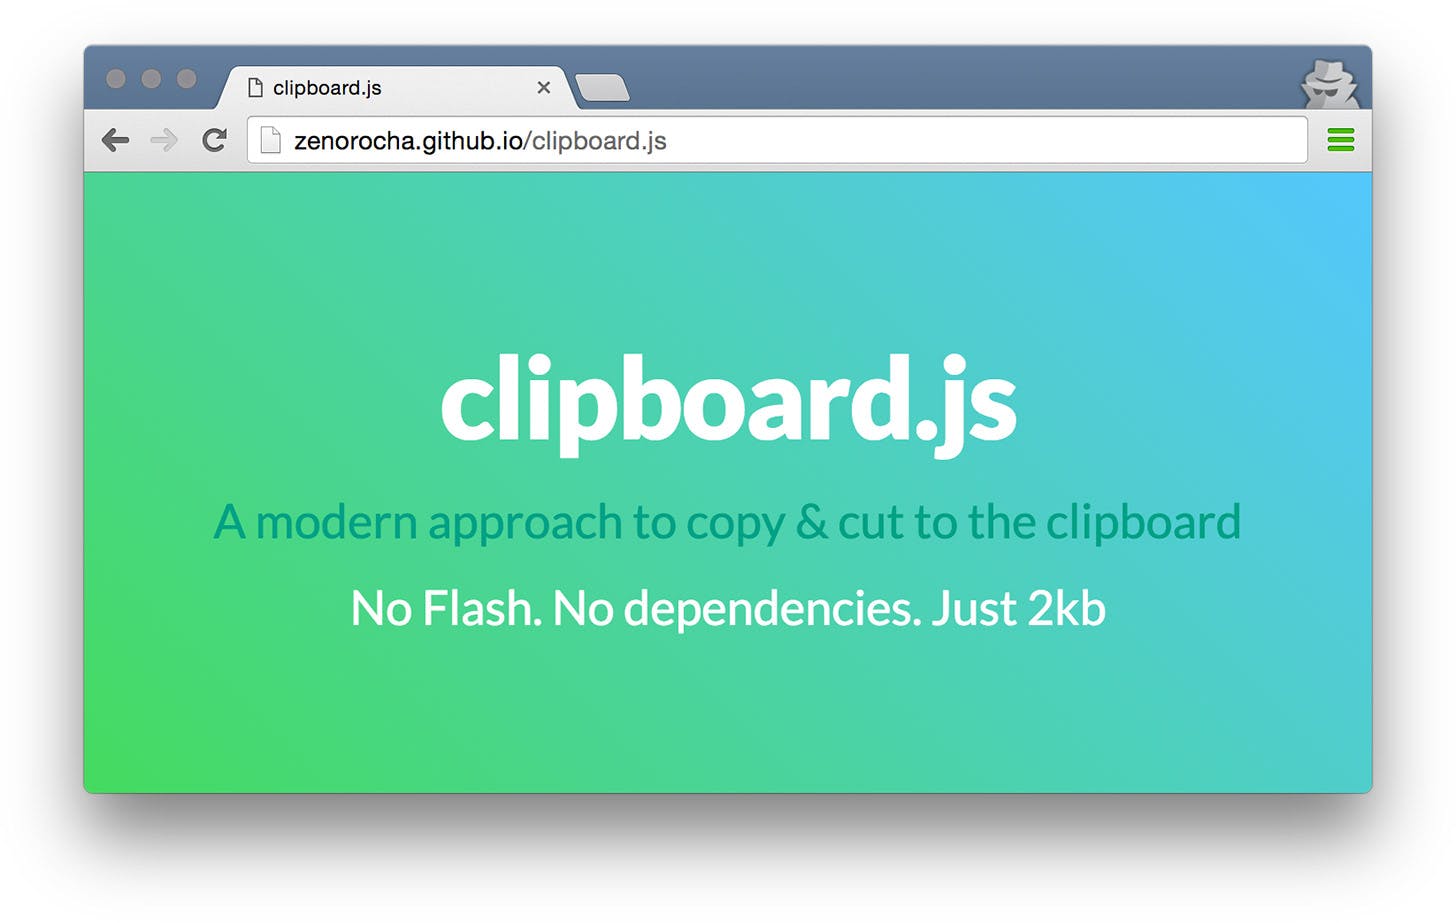 Clipboard.js - thư viện giúp cắt/sao chép nội dung trên web một cách dễ dàng.